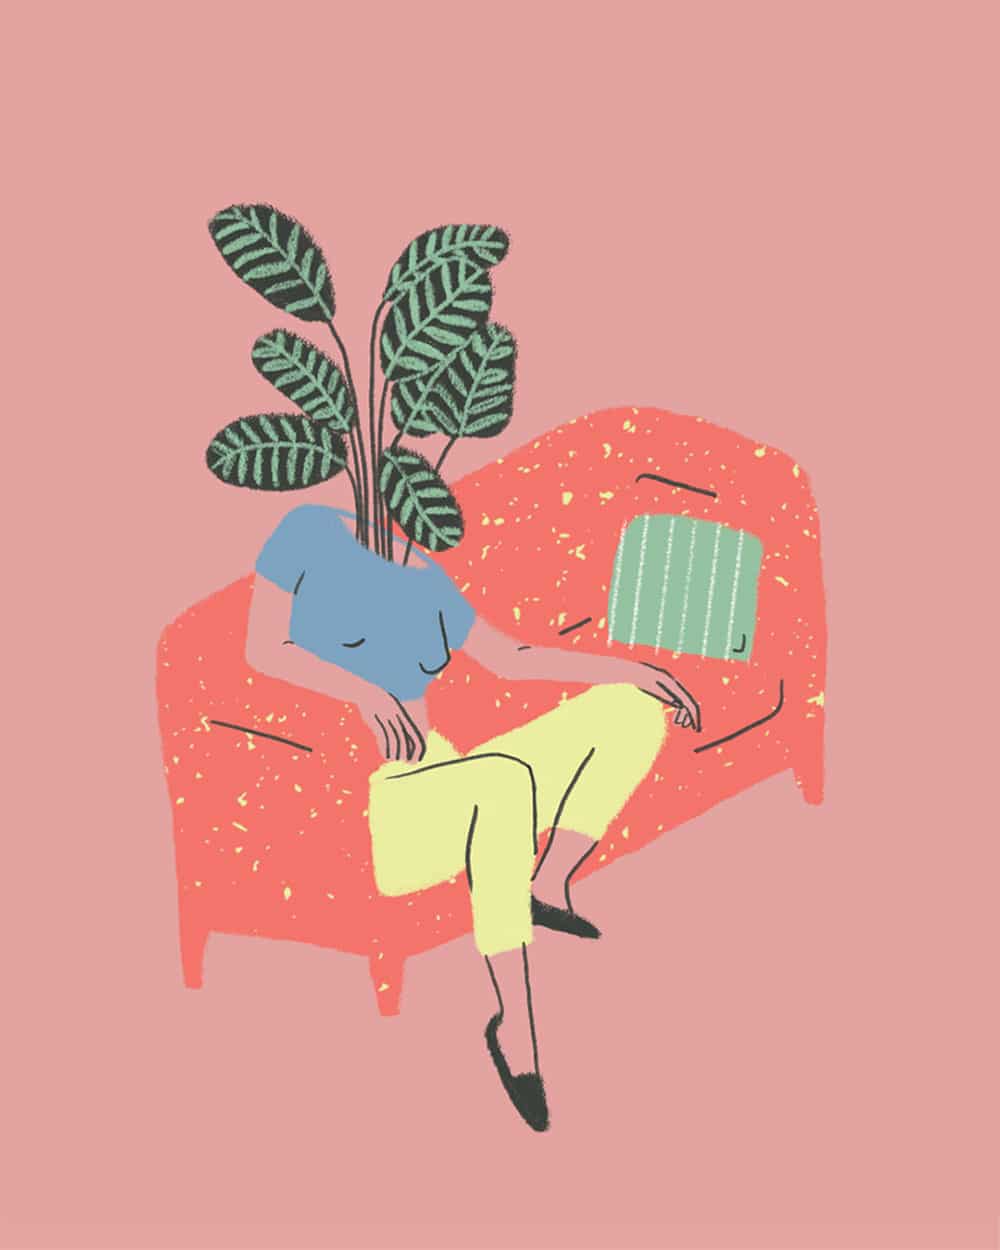 Digitale Illustration von Noemi Fabra. Zu sehen ist eine Person auf einem roten Sofa, der anstelle eines Kopfes Pflanzen auf dem Hals wachsen